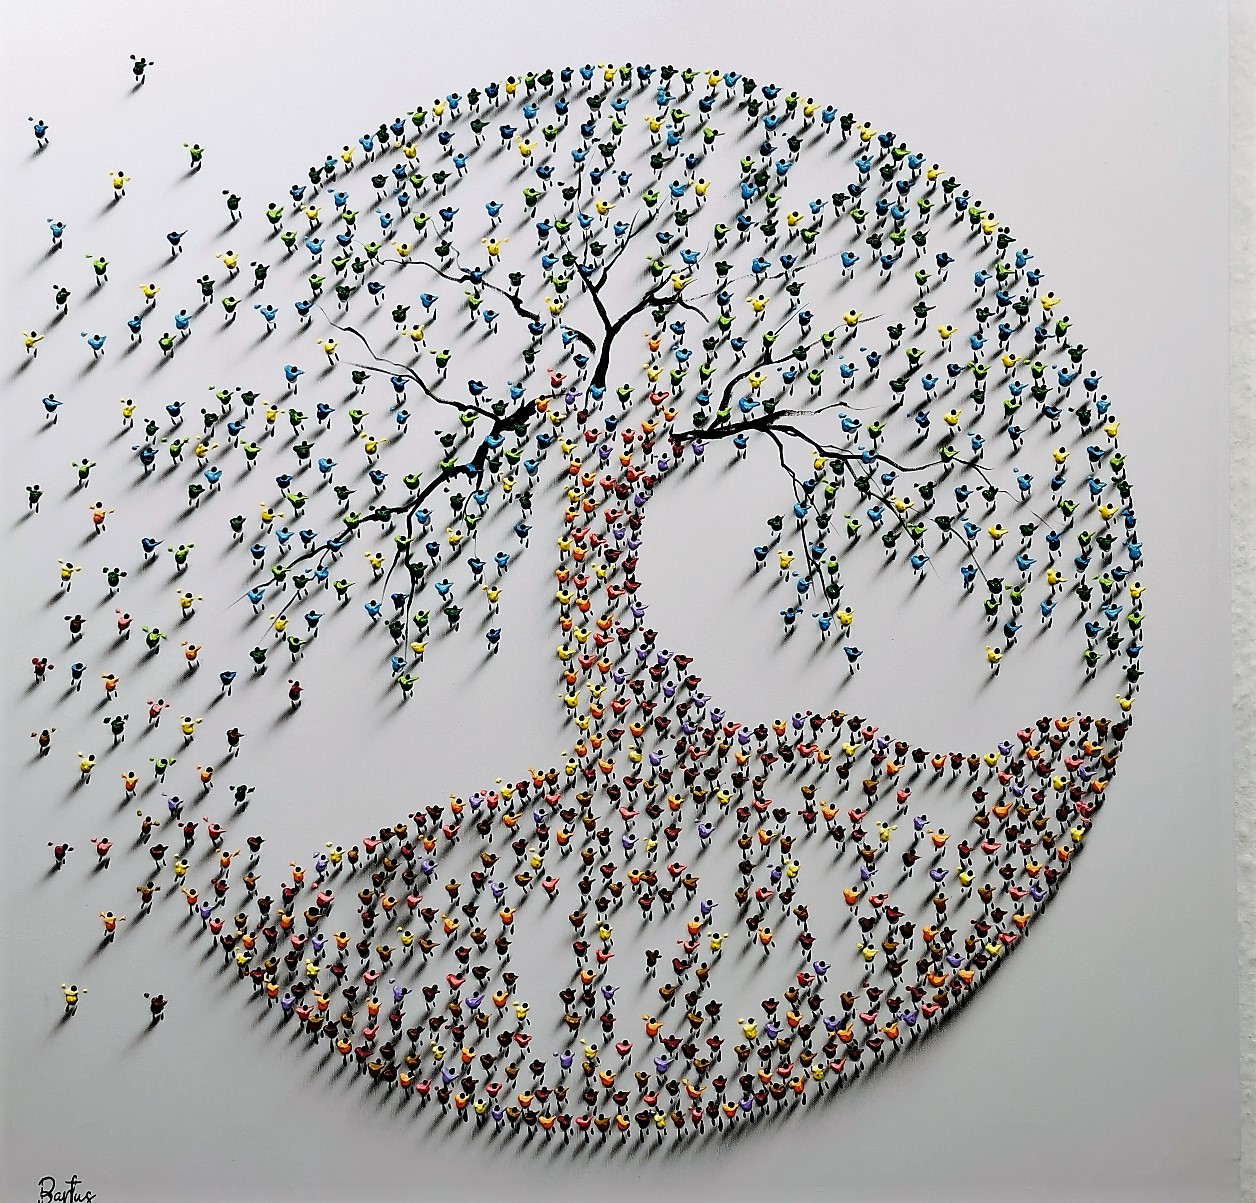 Francisco Bartus - Tree of Life